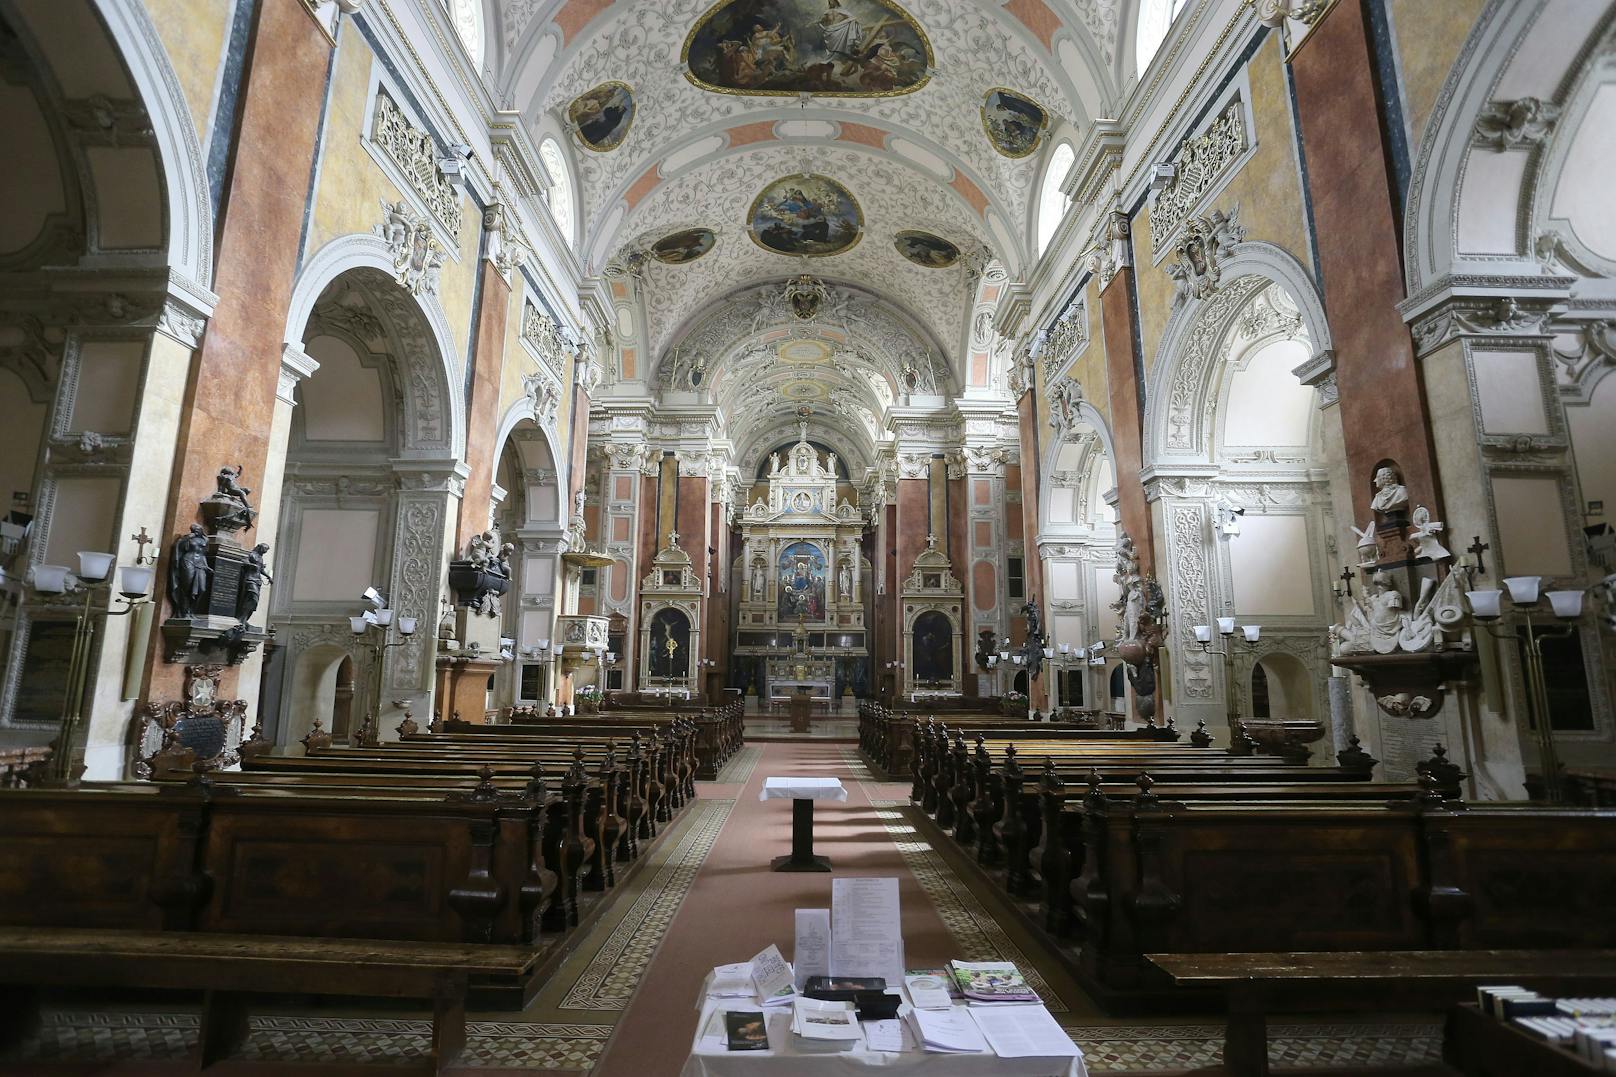 Ein 42-jähriger Österreicher wurde dabei beobachtet, wie er Bargeld aus dem Opferstock einer Kirche in Wien stahl. (Im Bild: Schottenkirche)&nbsp;